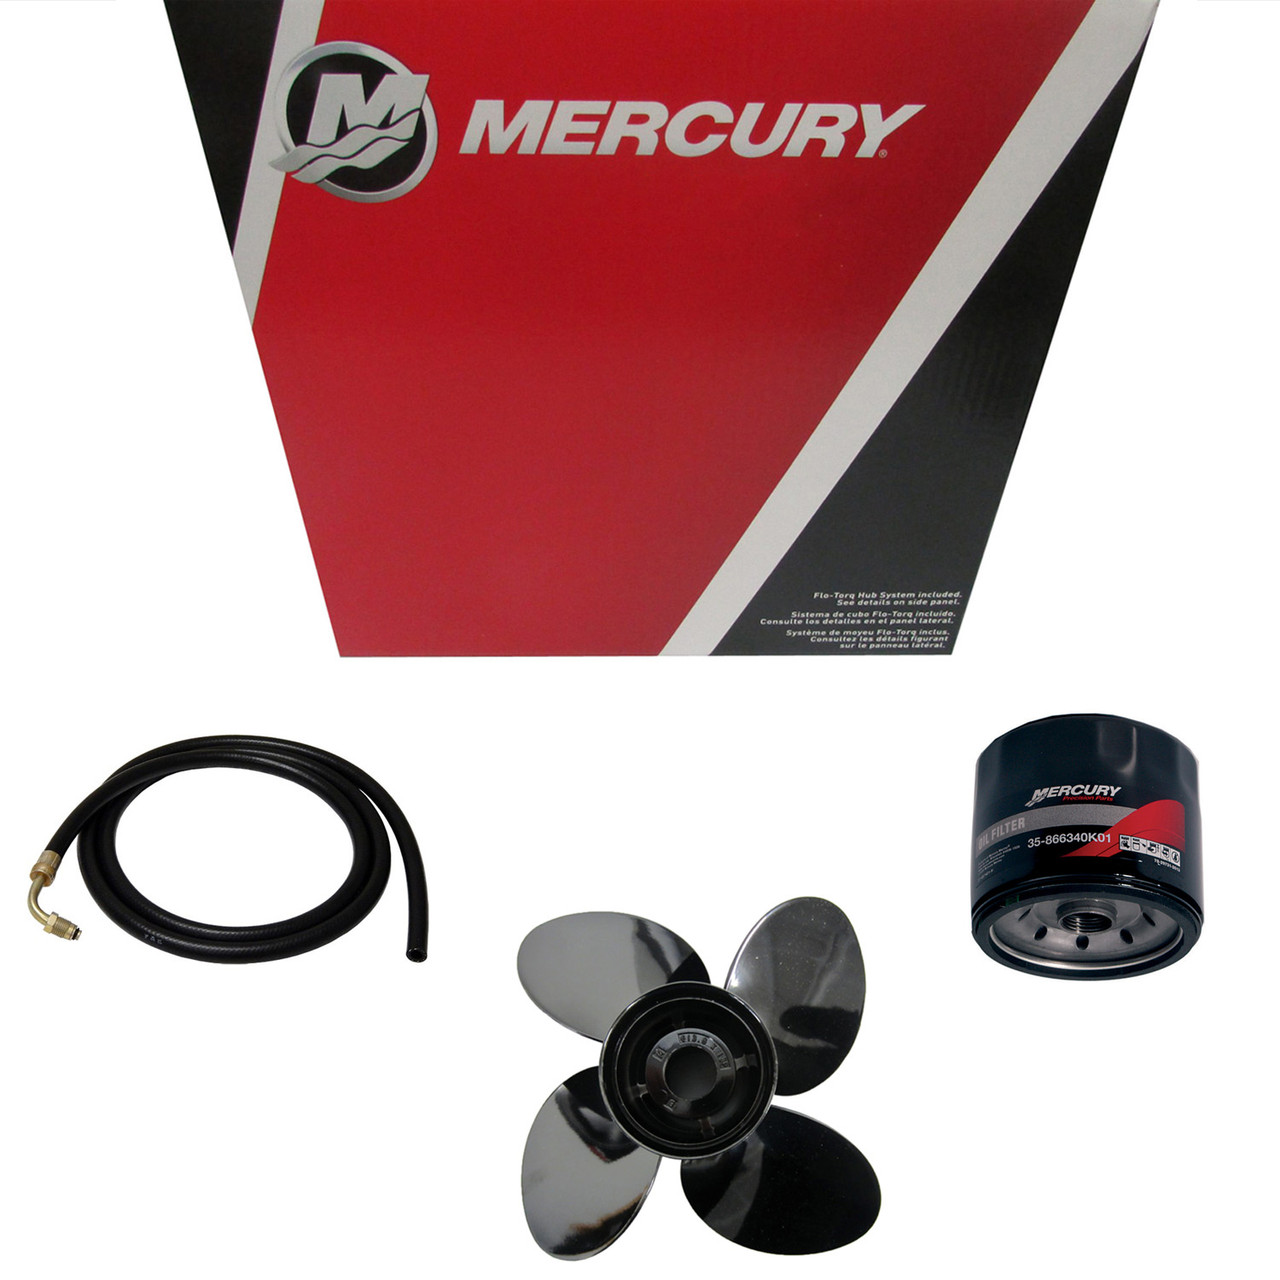 Mercury Marine / Mercruiser New OEM Hose-Molded, 32-892037